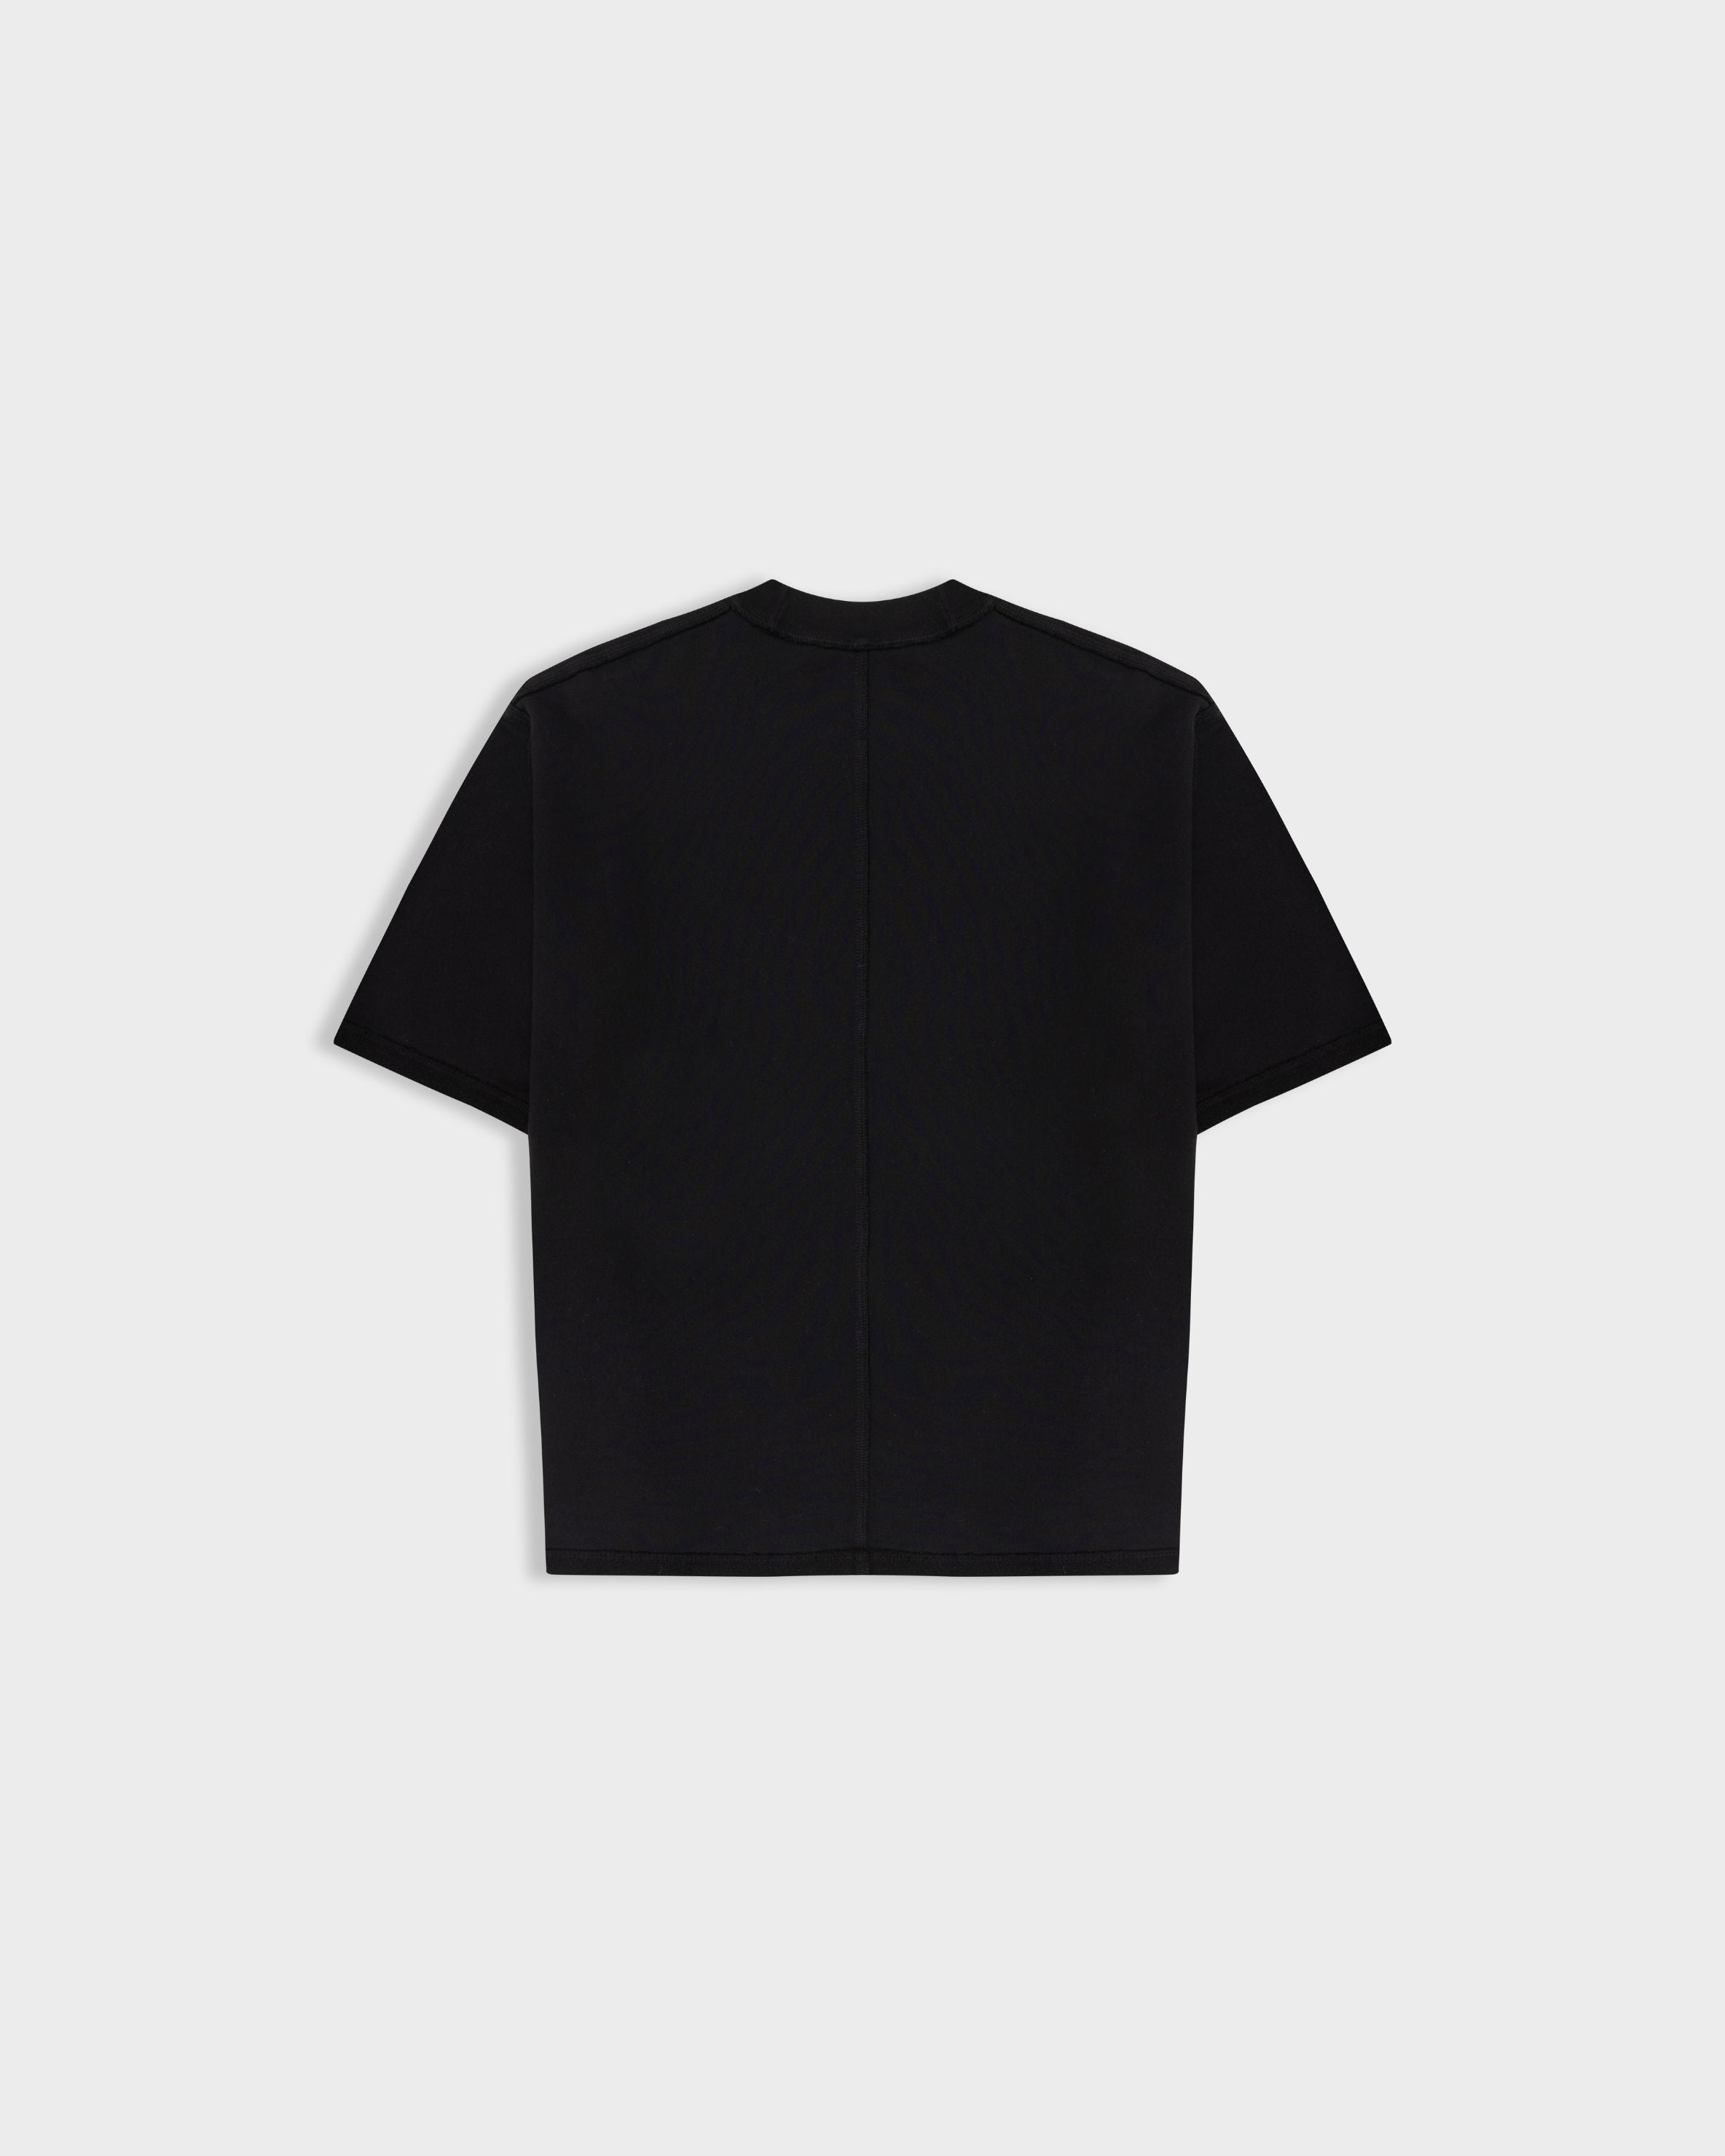 Camiseta Monoic Negro Oscuro | Camisetas Endless Dreams | Monoic Studios